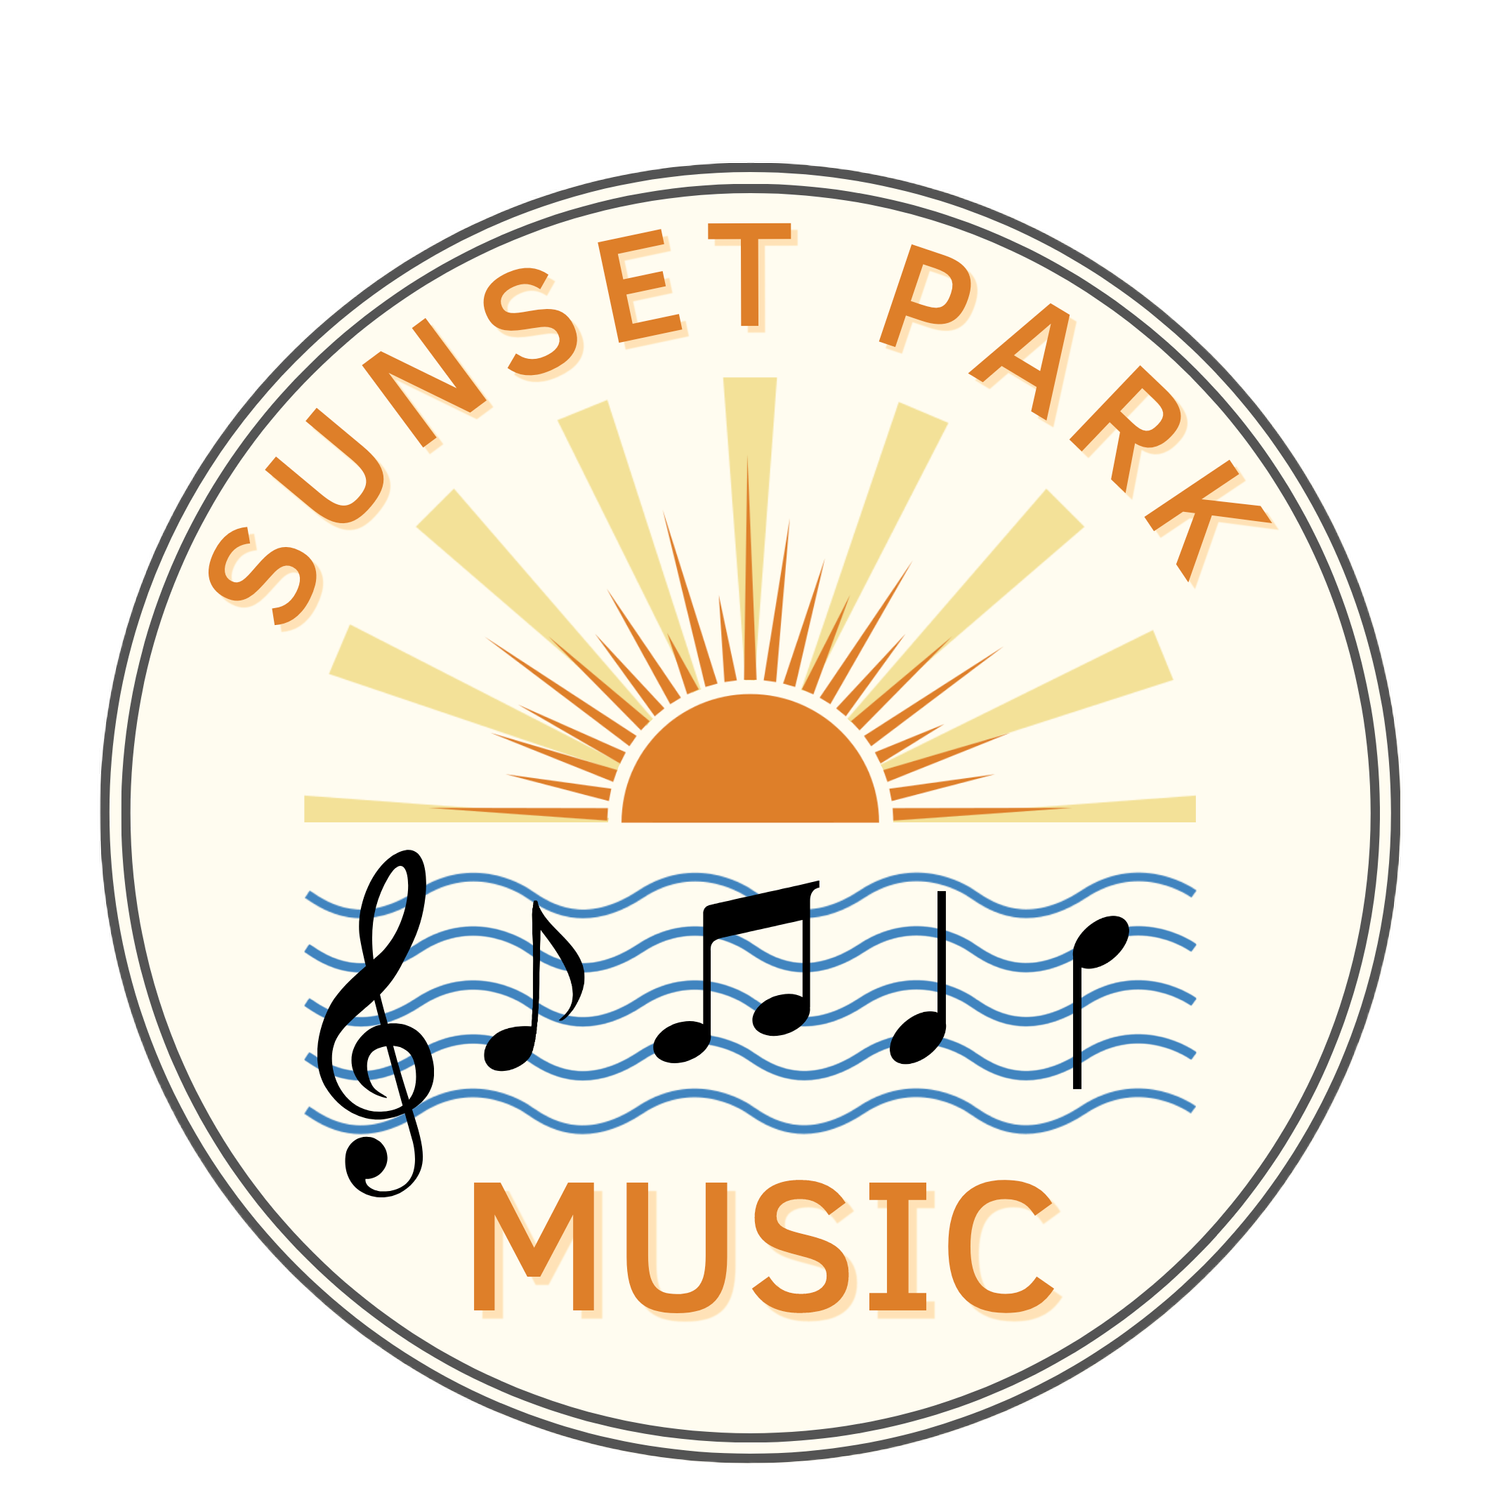 Sunset Park Music